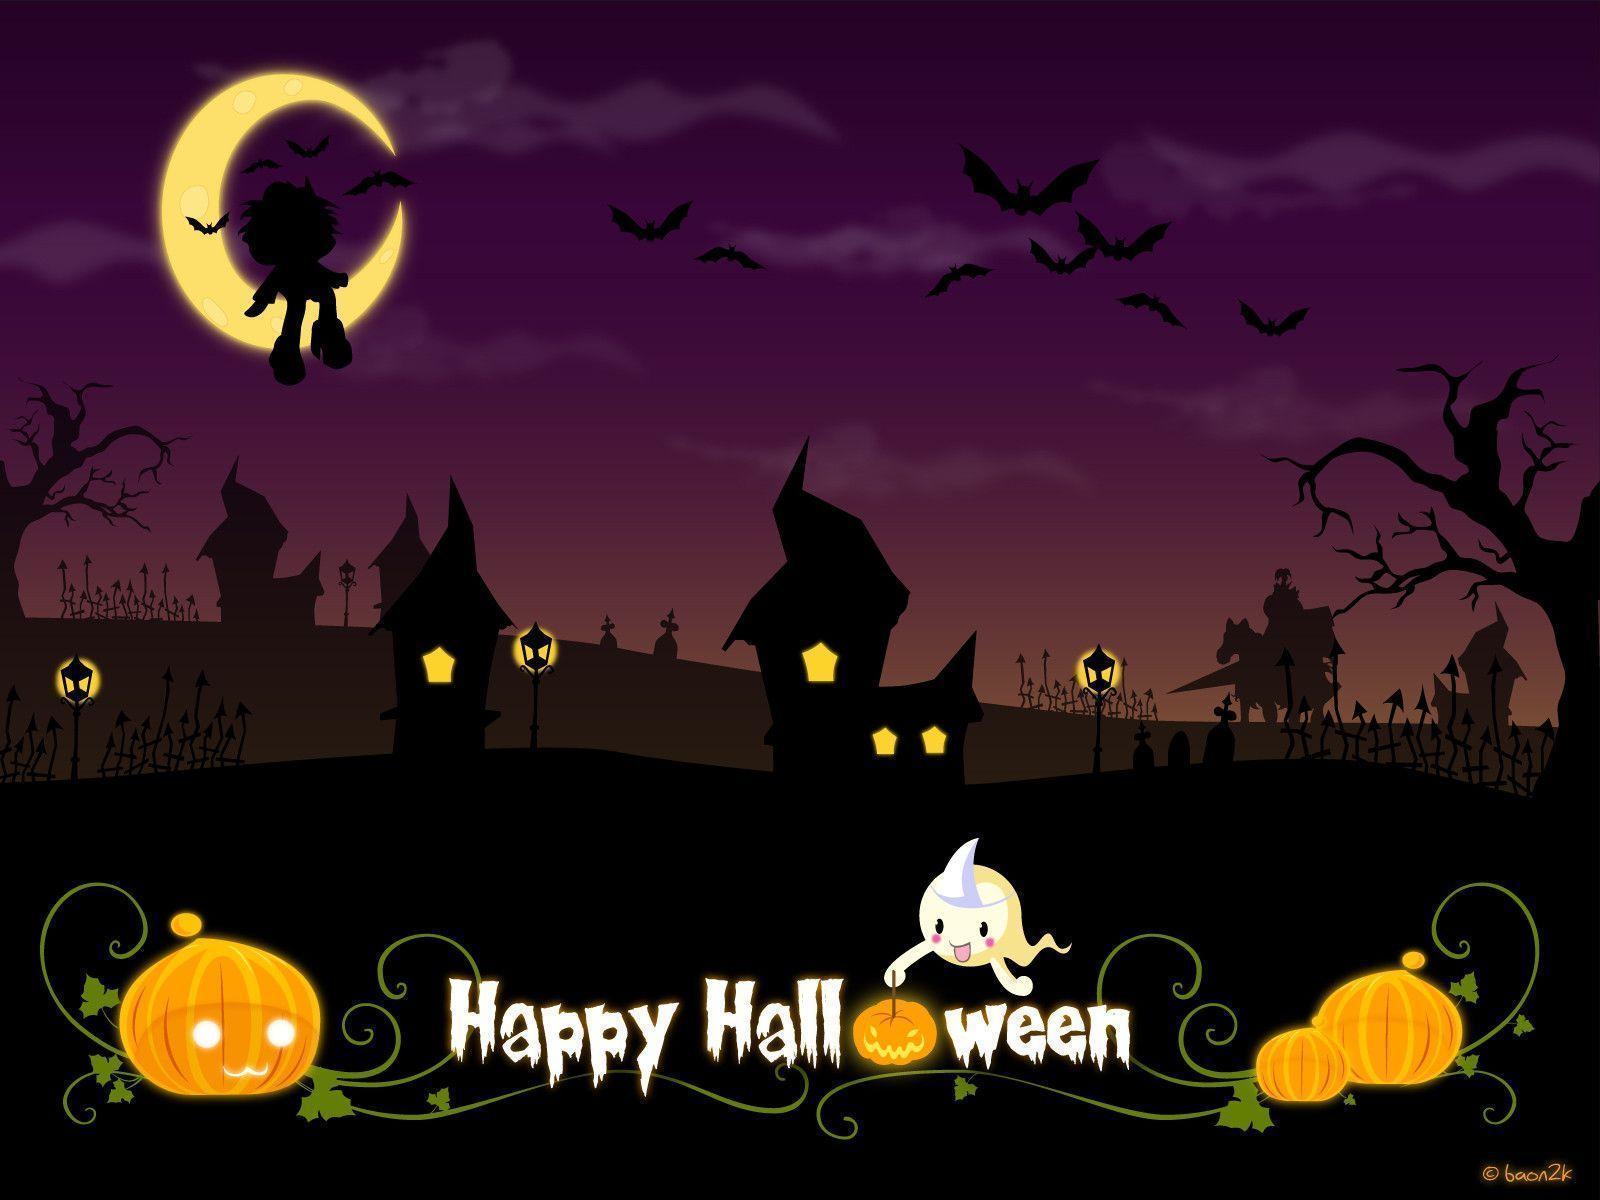 Happy Halloween Desktop Backgrounds